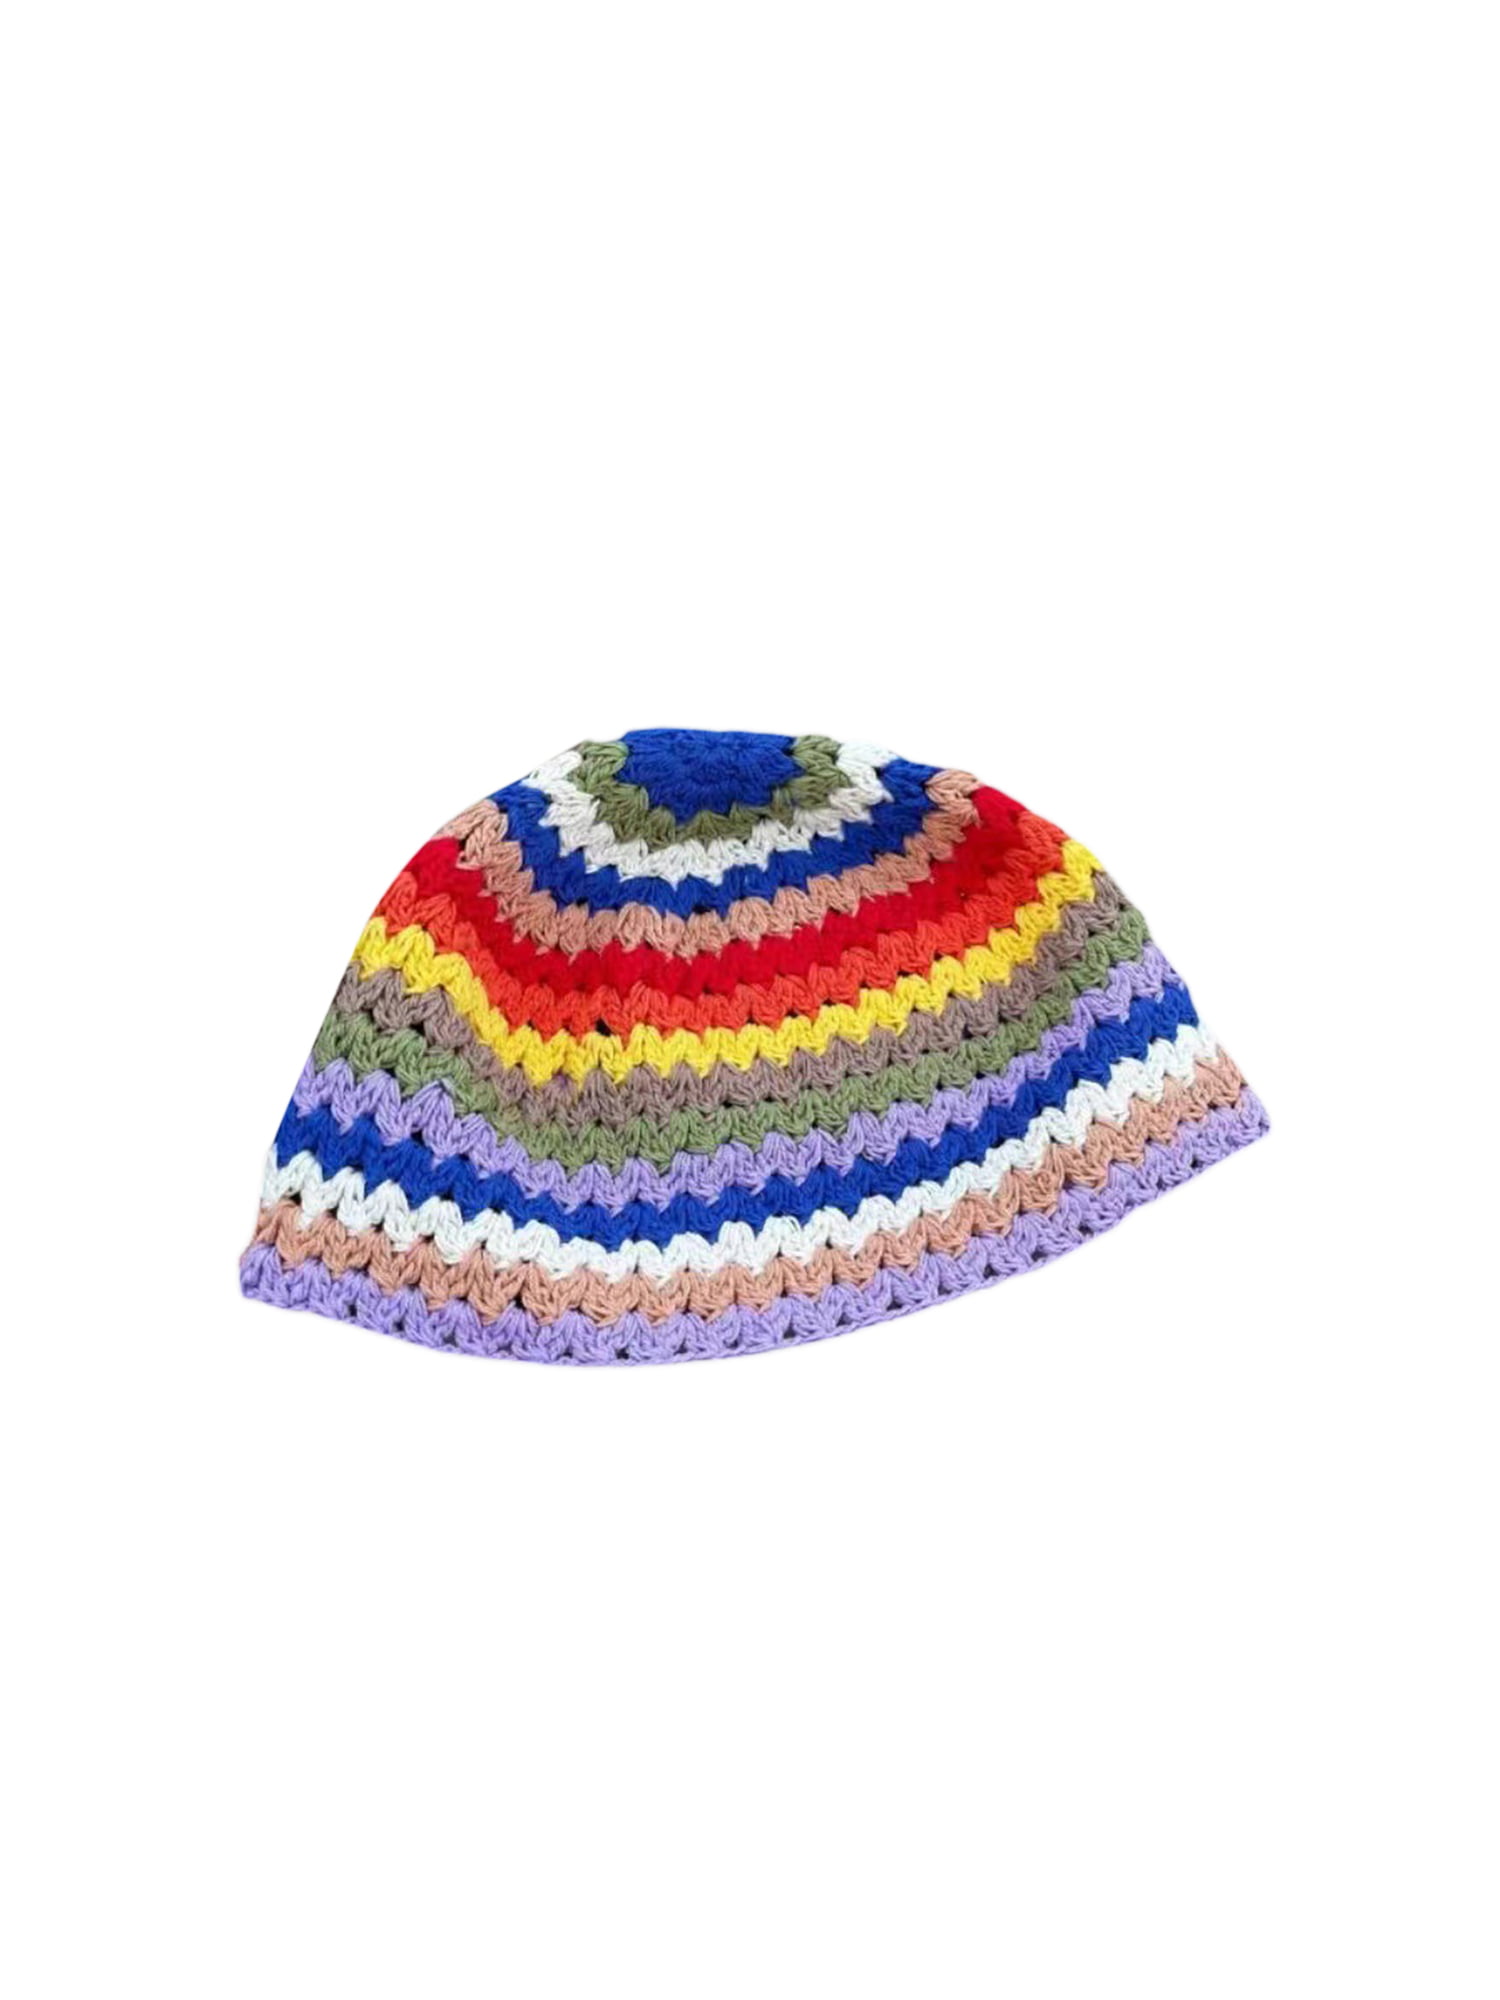 Rainbow crochet Hat Sun Hat Boho cap stripes Ladies Summer Hat cotton Hat rainbow color Crochet Hat with Brim Accessory